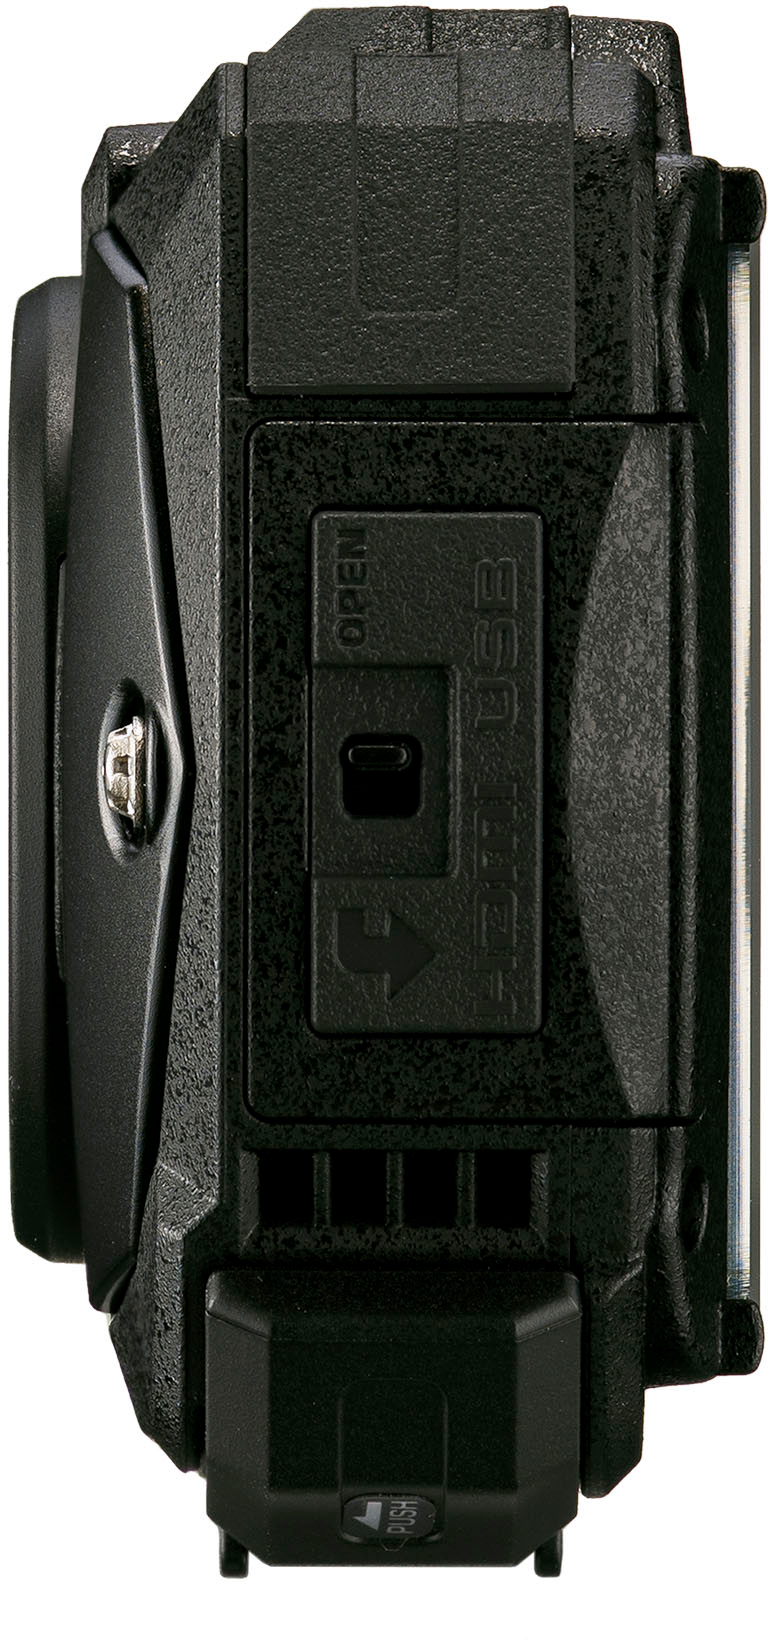 Ricoh WG-80 16.0 Megapixel Waterproof Digital Camera Black 03123 - Best Buy